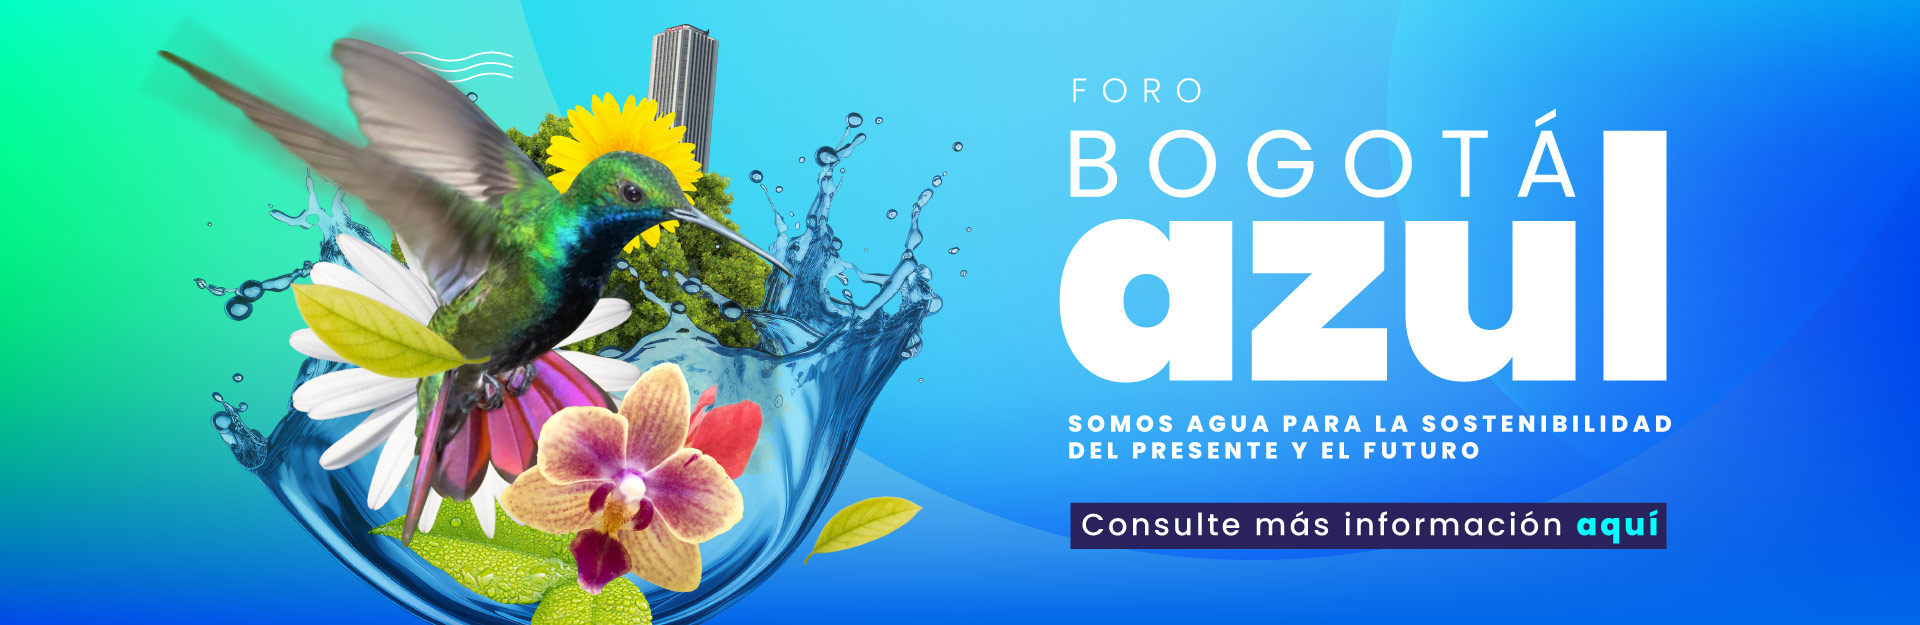 Foro Bogotá Azul da a conocer las acciones que garantizan la sostenibilidad del agua para Bogotá